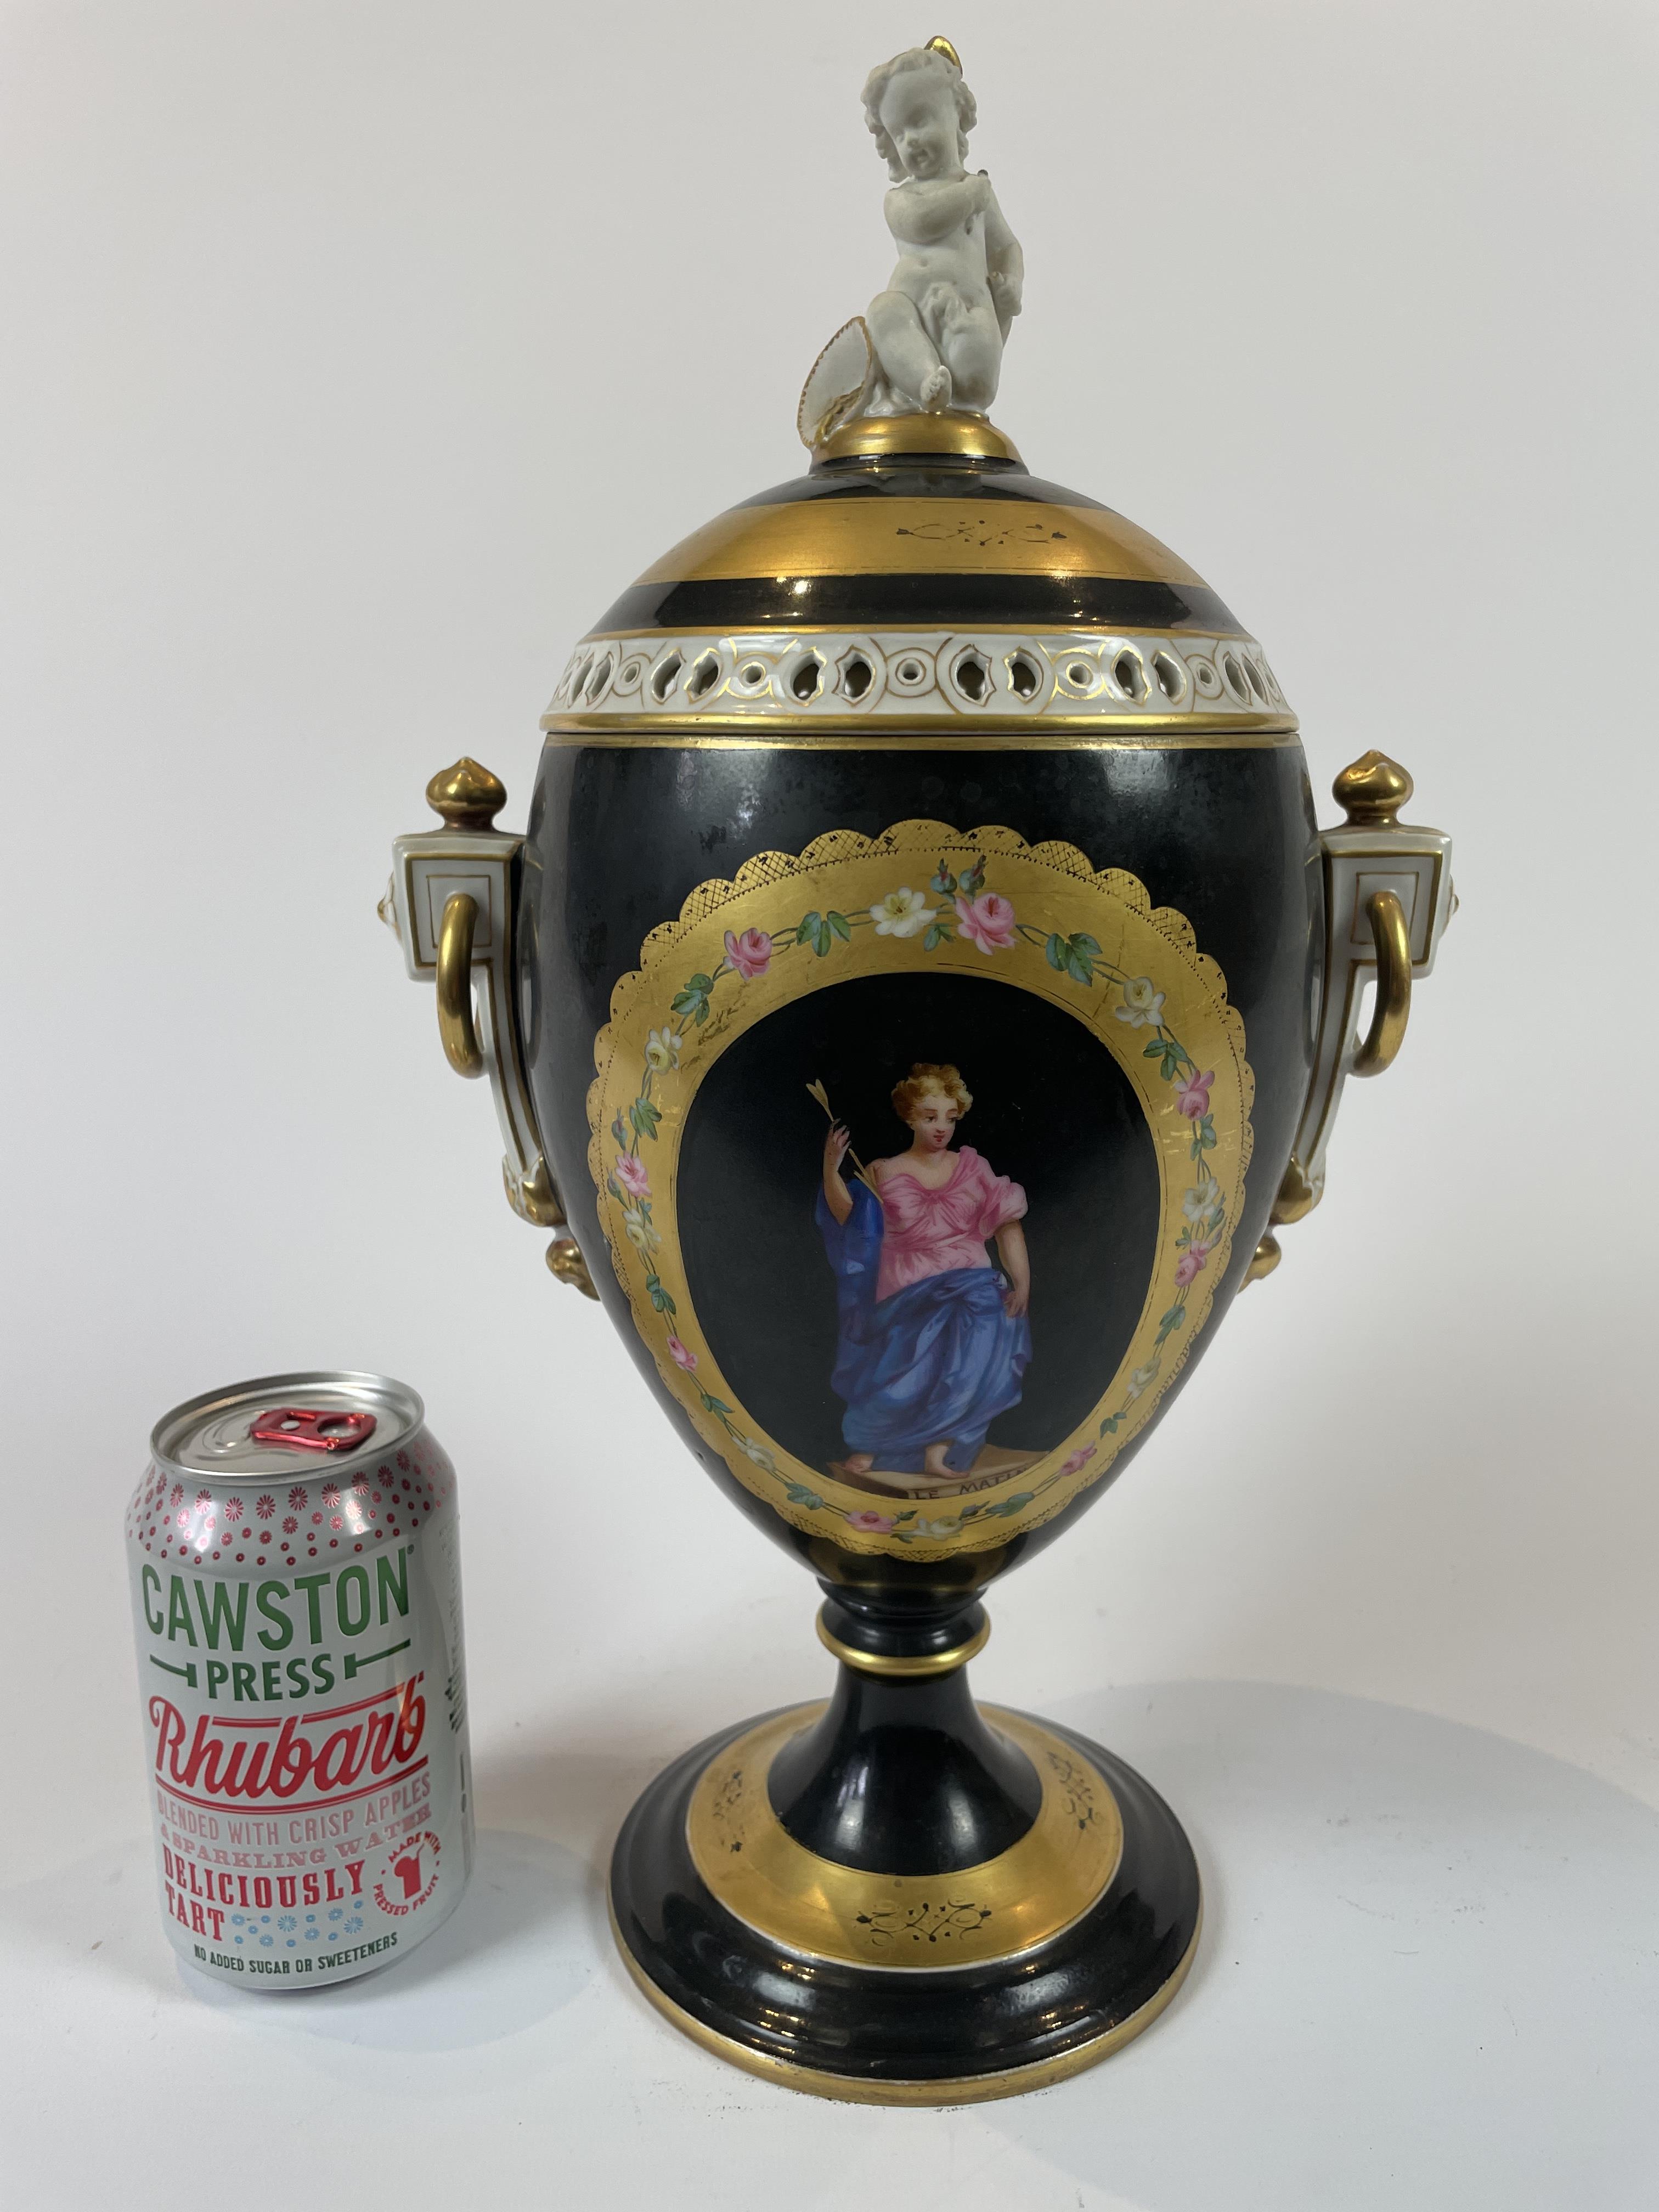 19th Century Urn with Cherub handled lid from the Derek Gardner collection